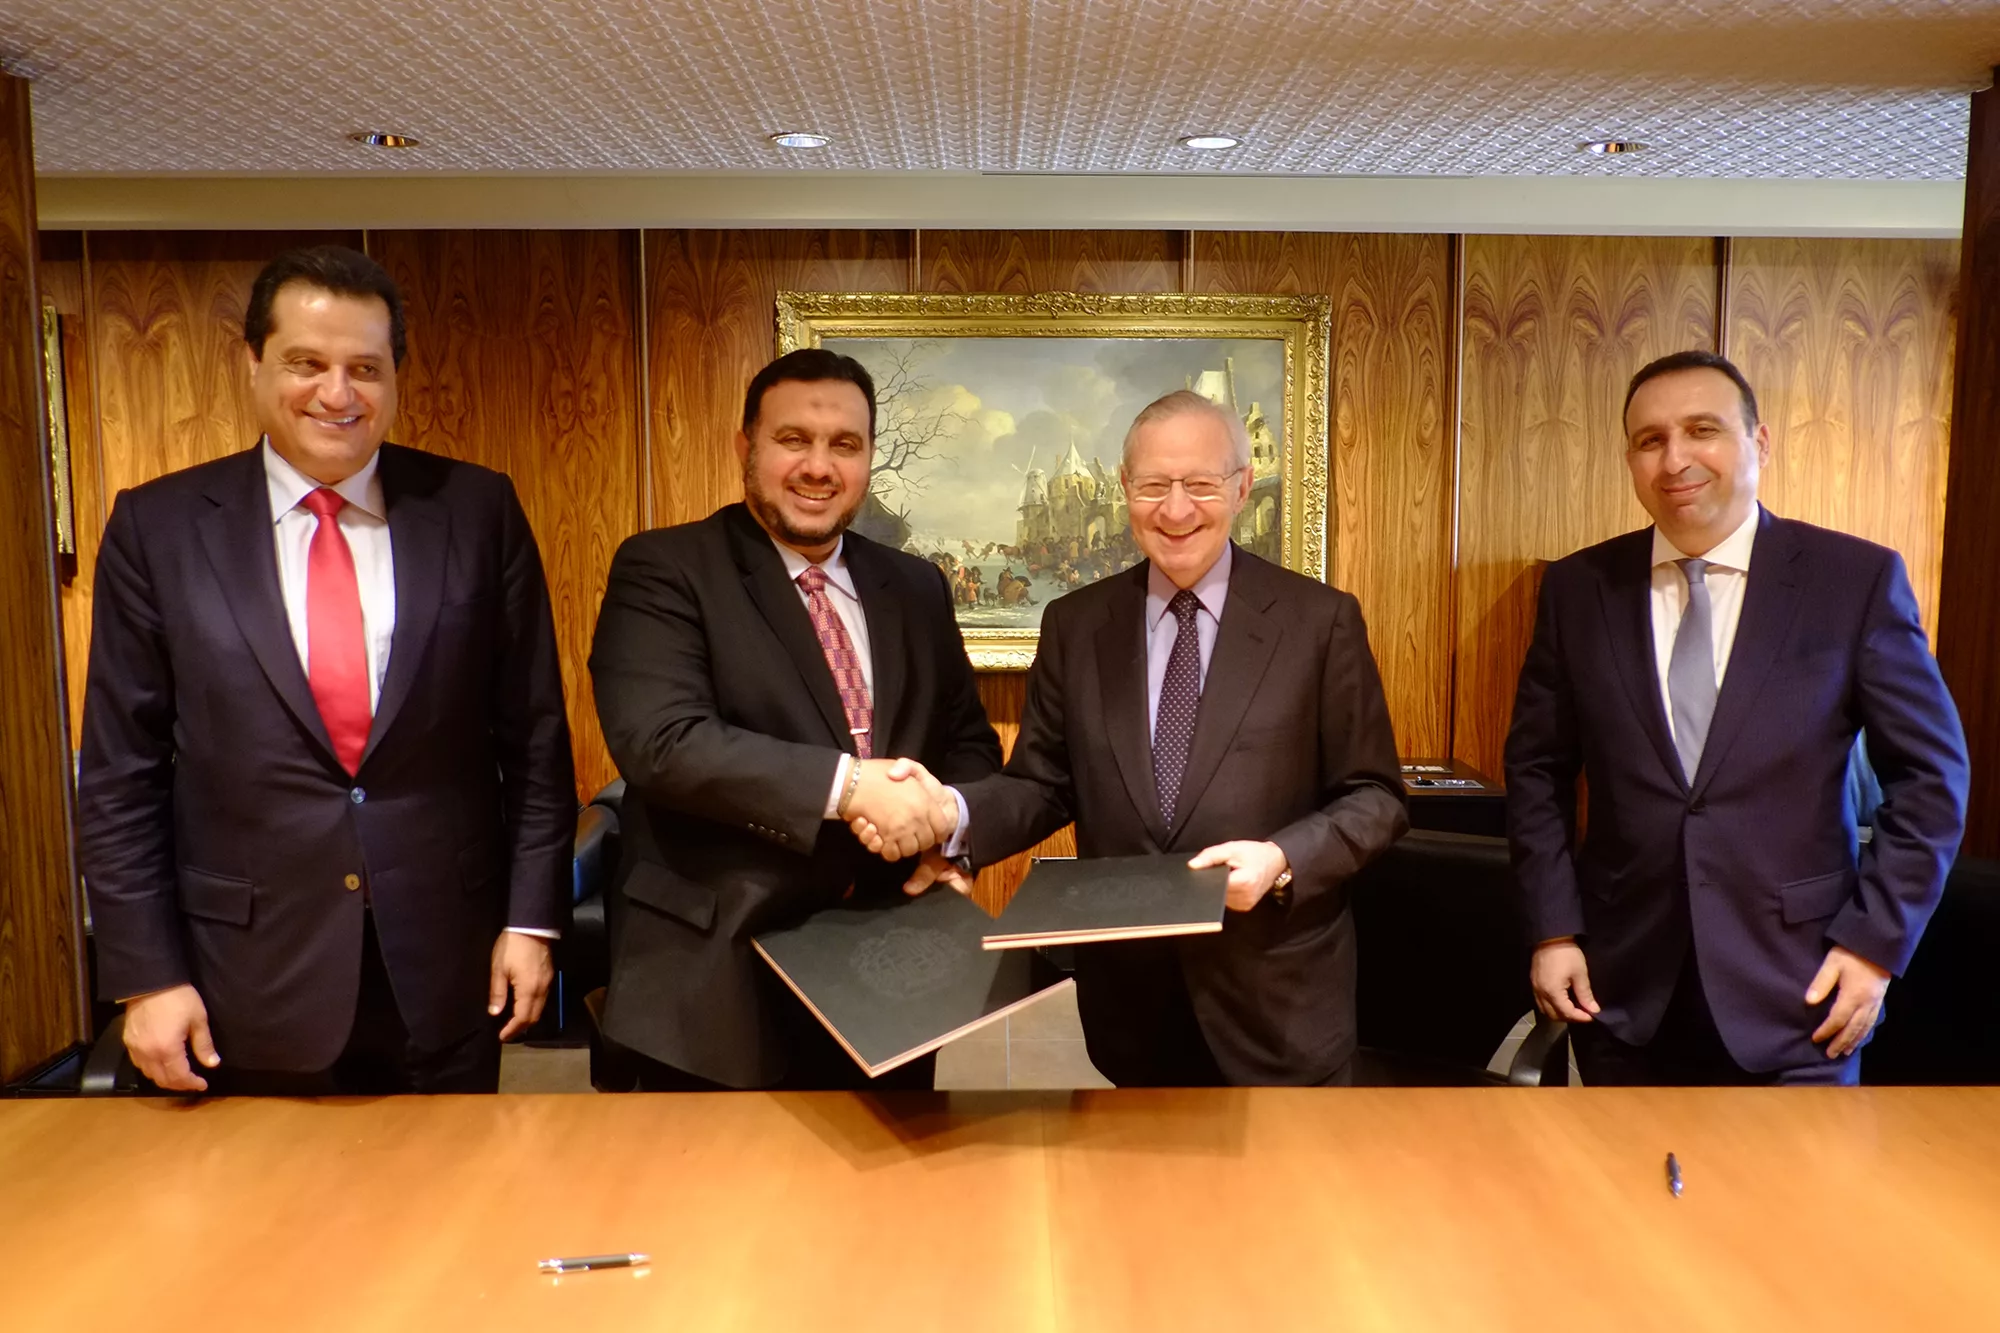 Les cambres de Barcelona i Jeddah signen un acord de cooperació econòmica